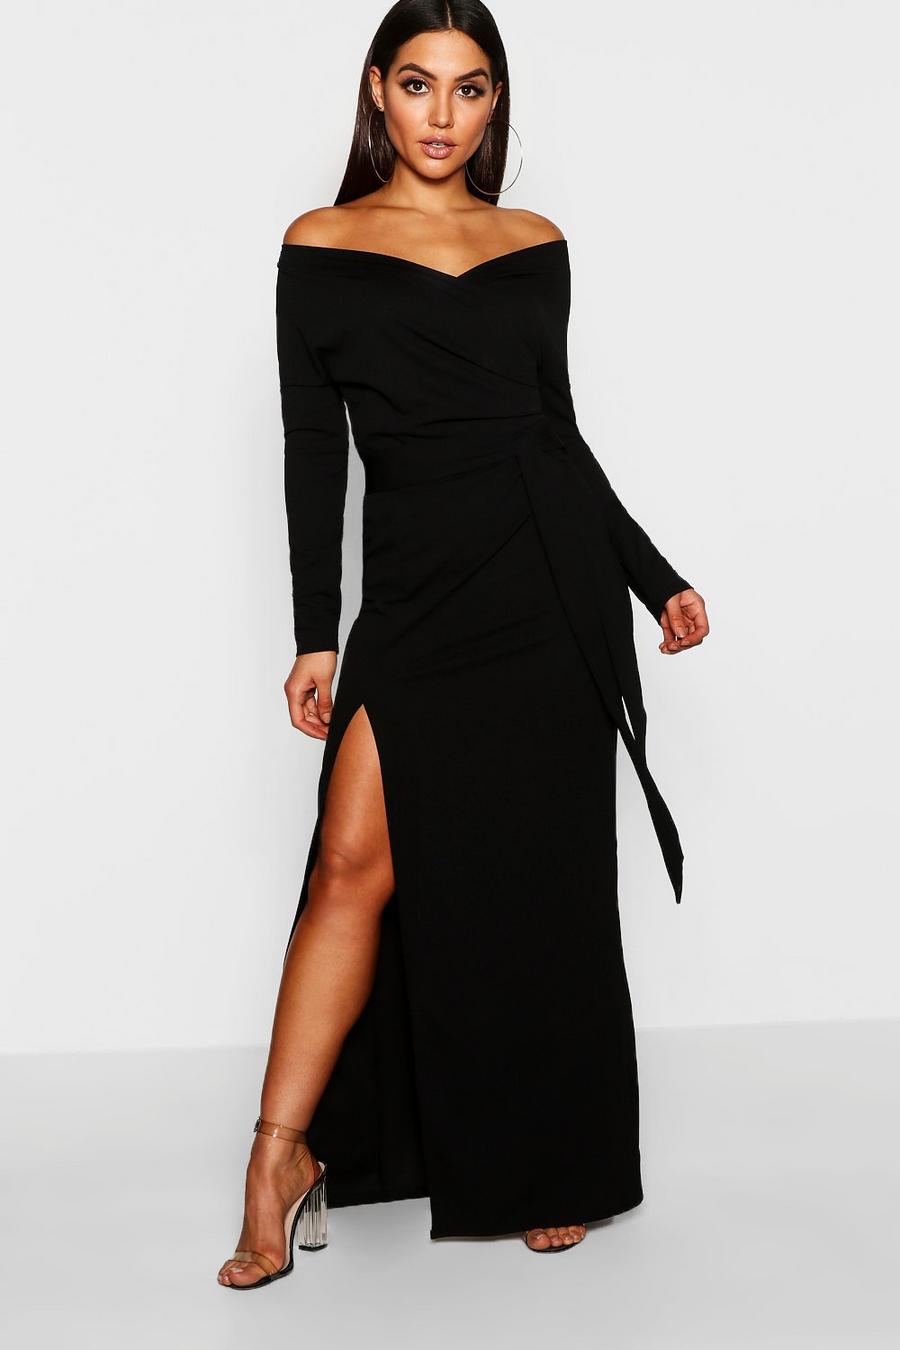 Black negro Off The Shoulder Split Maxi Bridesmaid Dress